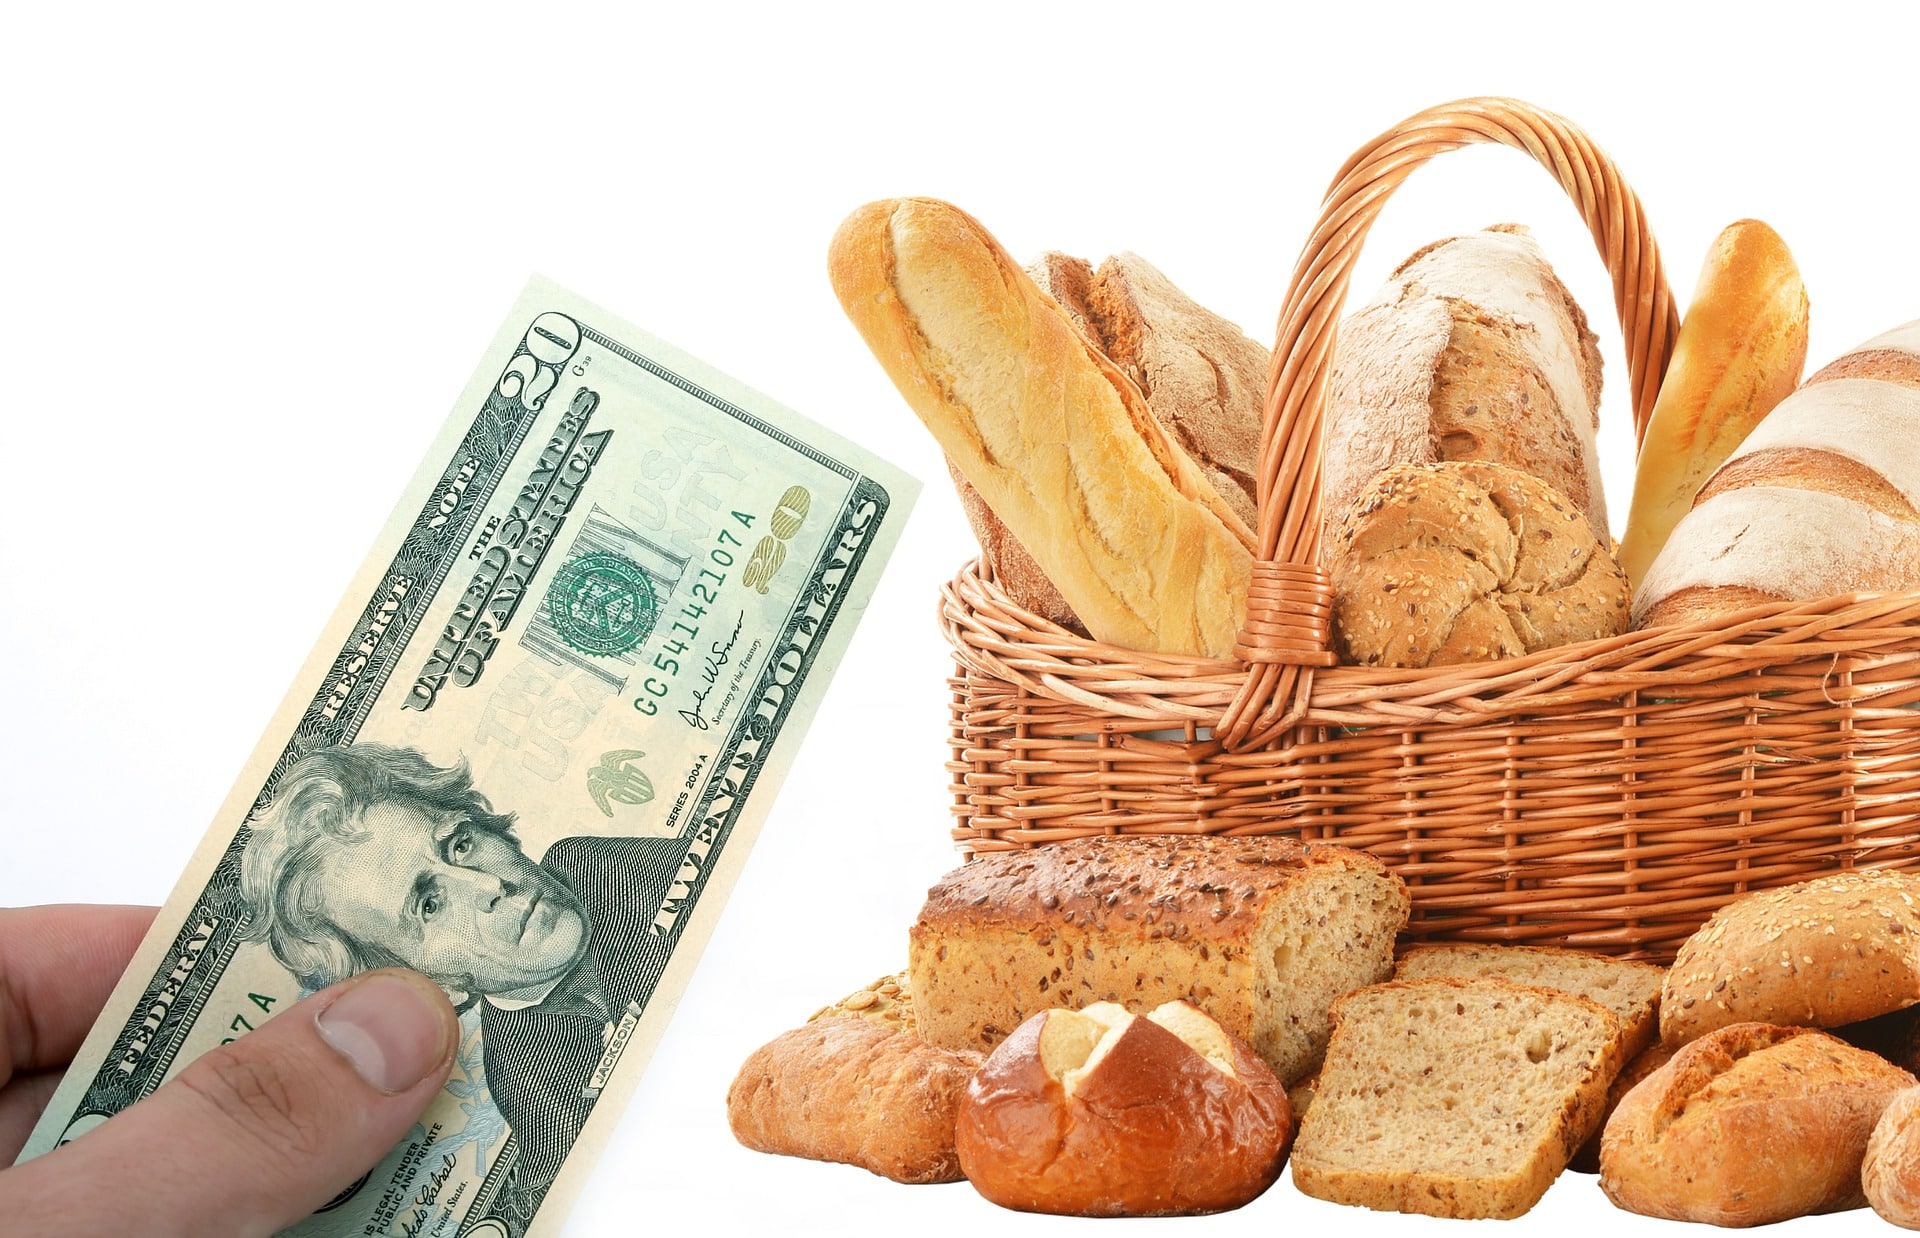 We ve got bread. Хлеб. Хлеб и хлебобулочные изделия. Хлеб и деньги. Денежный хлеб.